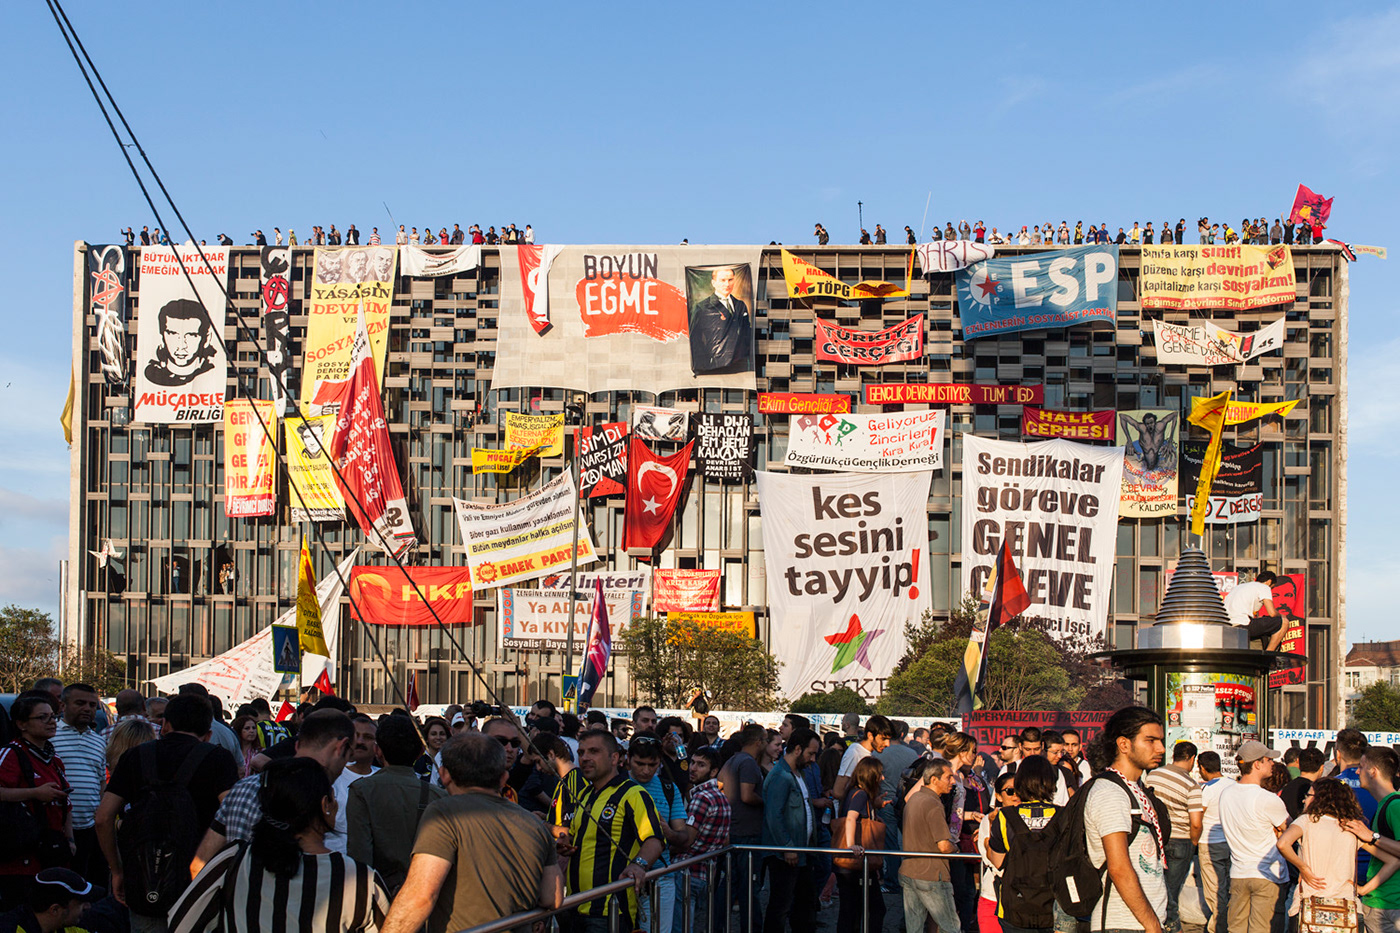 occupygezi occupy geziparki   istanbul Taksim OccupyBrazil gezi